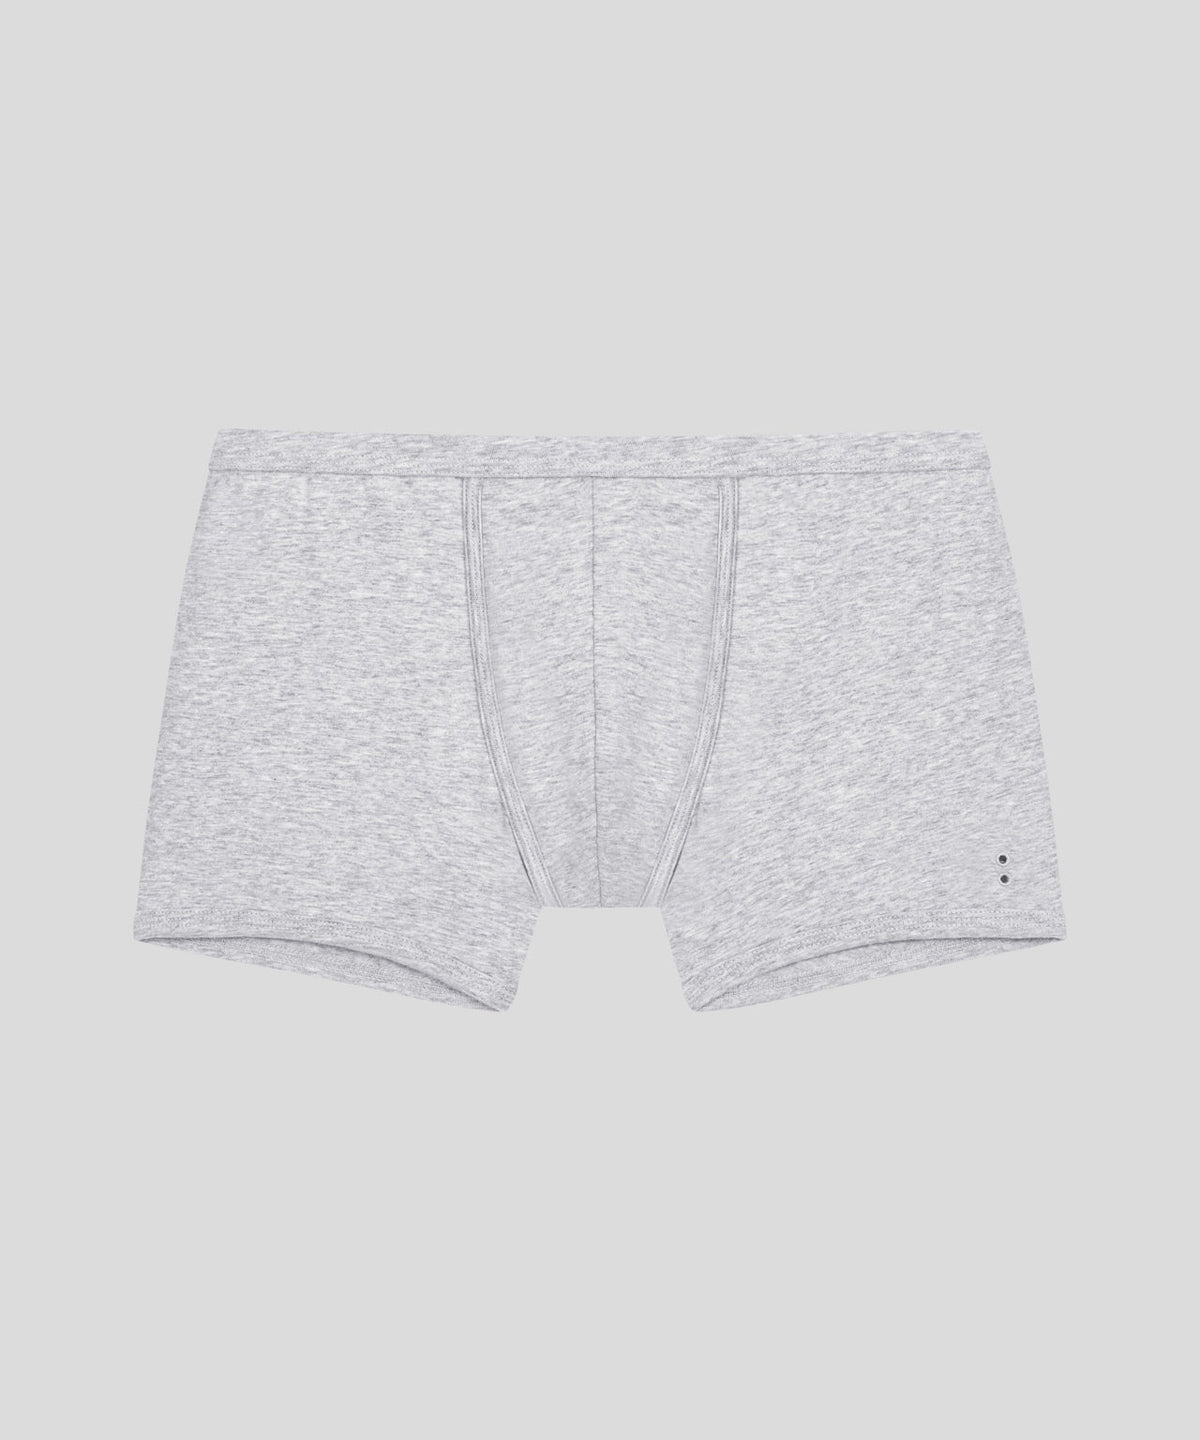 Handful Active Men's Briefs - White I Men's Designer Underwear